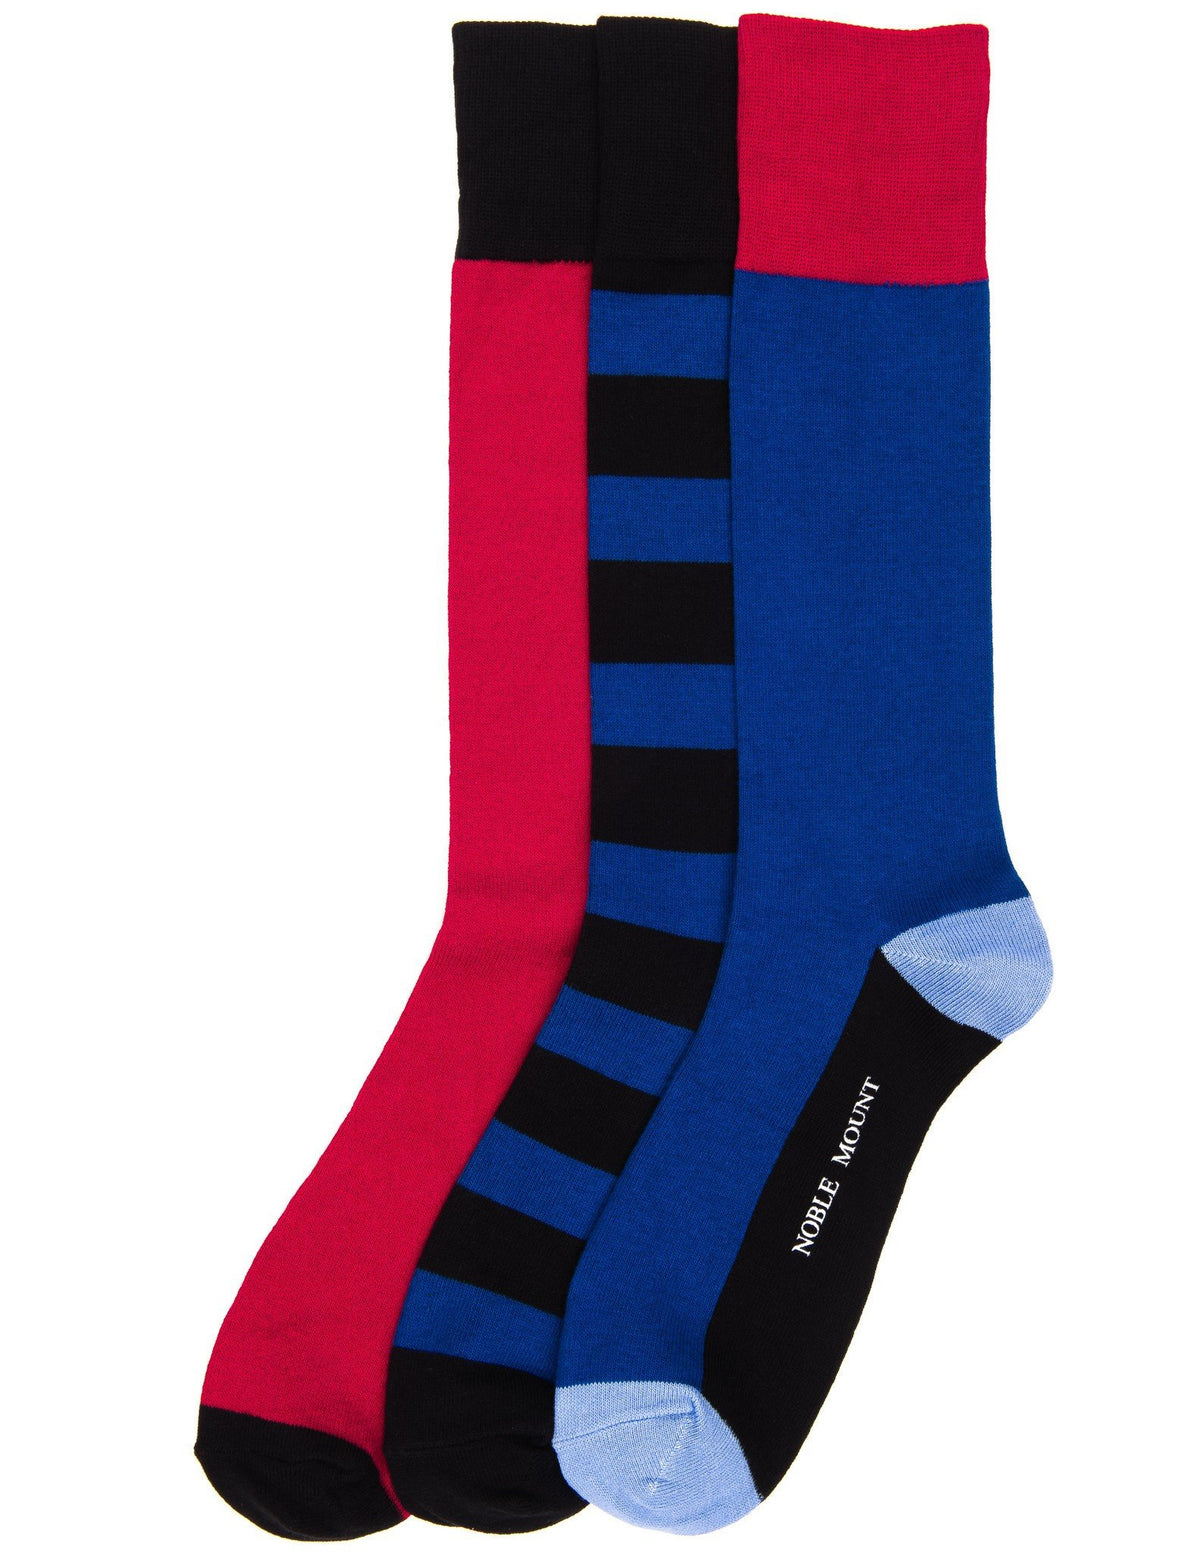 Men's Combed Cotton Dress Socks 3-Pack - Set A4